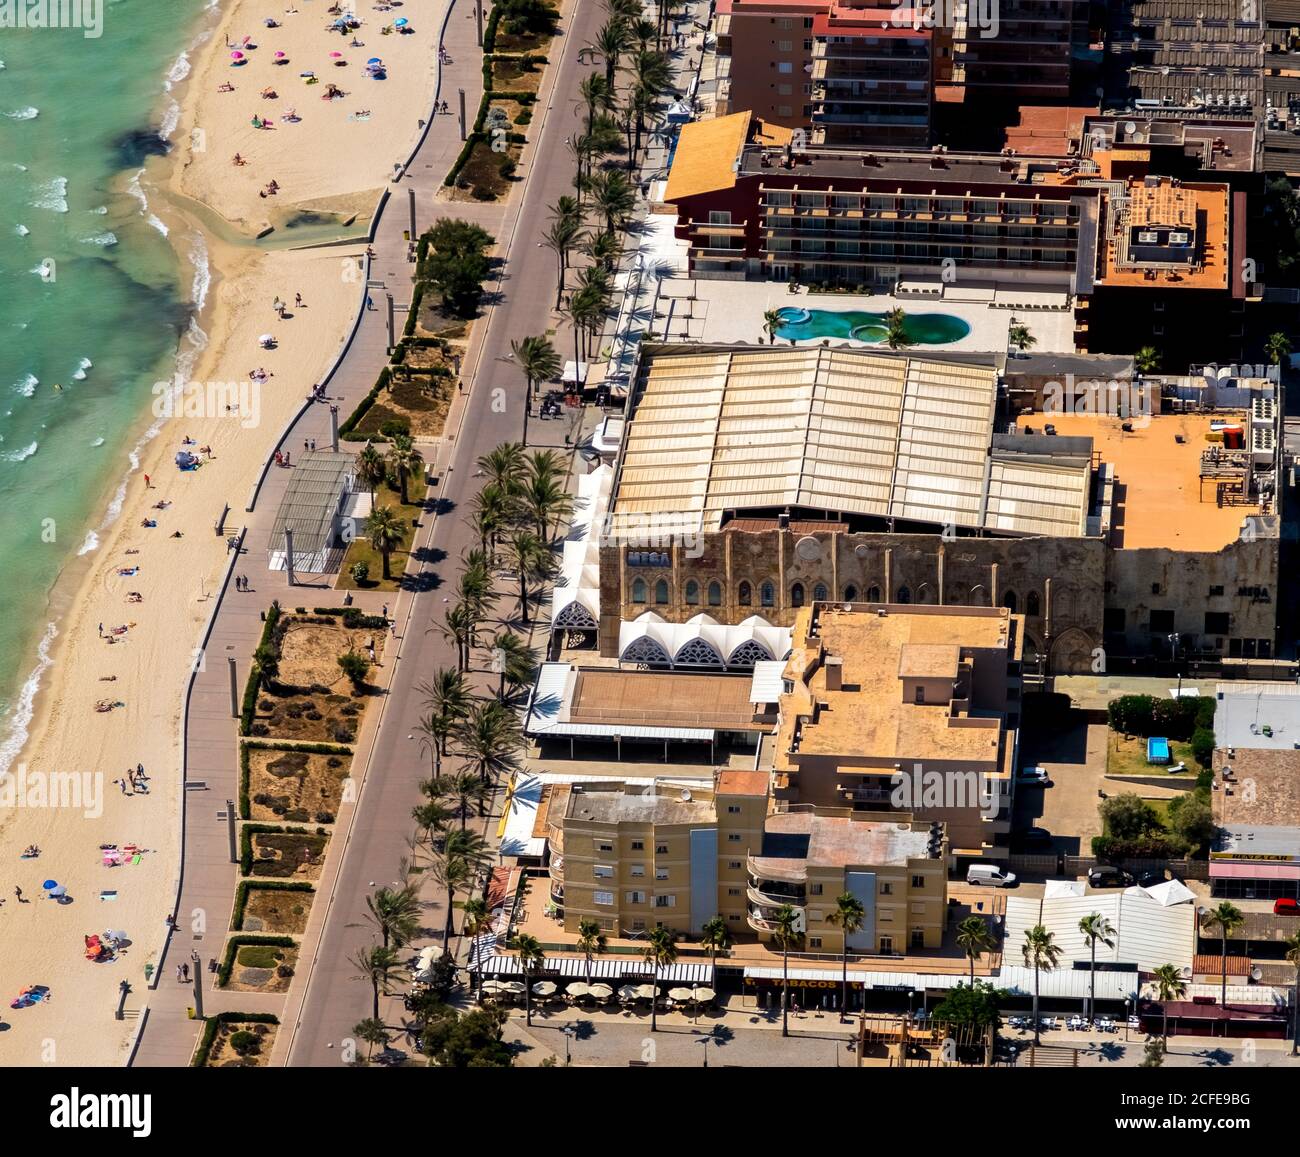 Vista aérea, gran parque cerrado, playa Arenal con Balneario 5, Balneario 6, Balneario 5, S'arenal, Arenal, Ballermann, Mallorca, Baleares Foto de stock